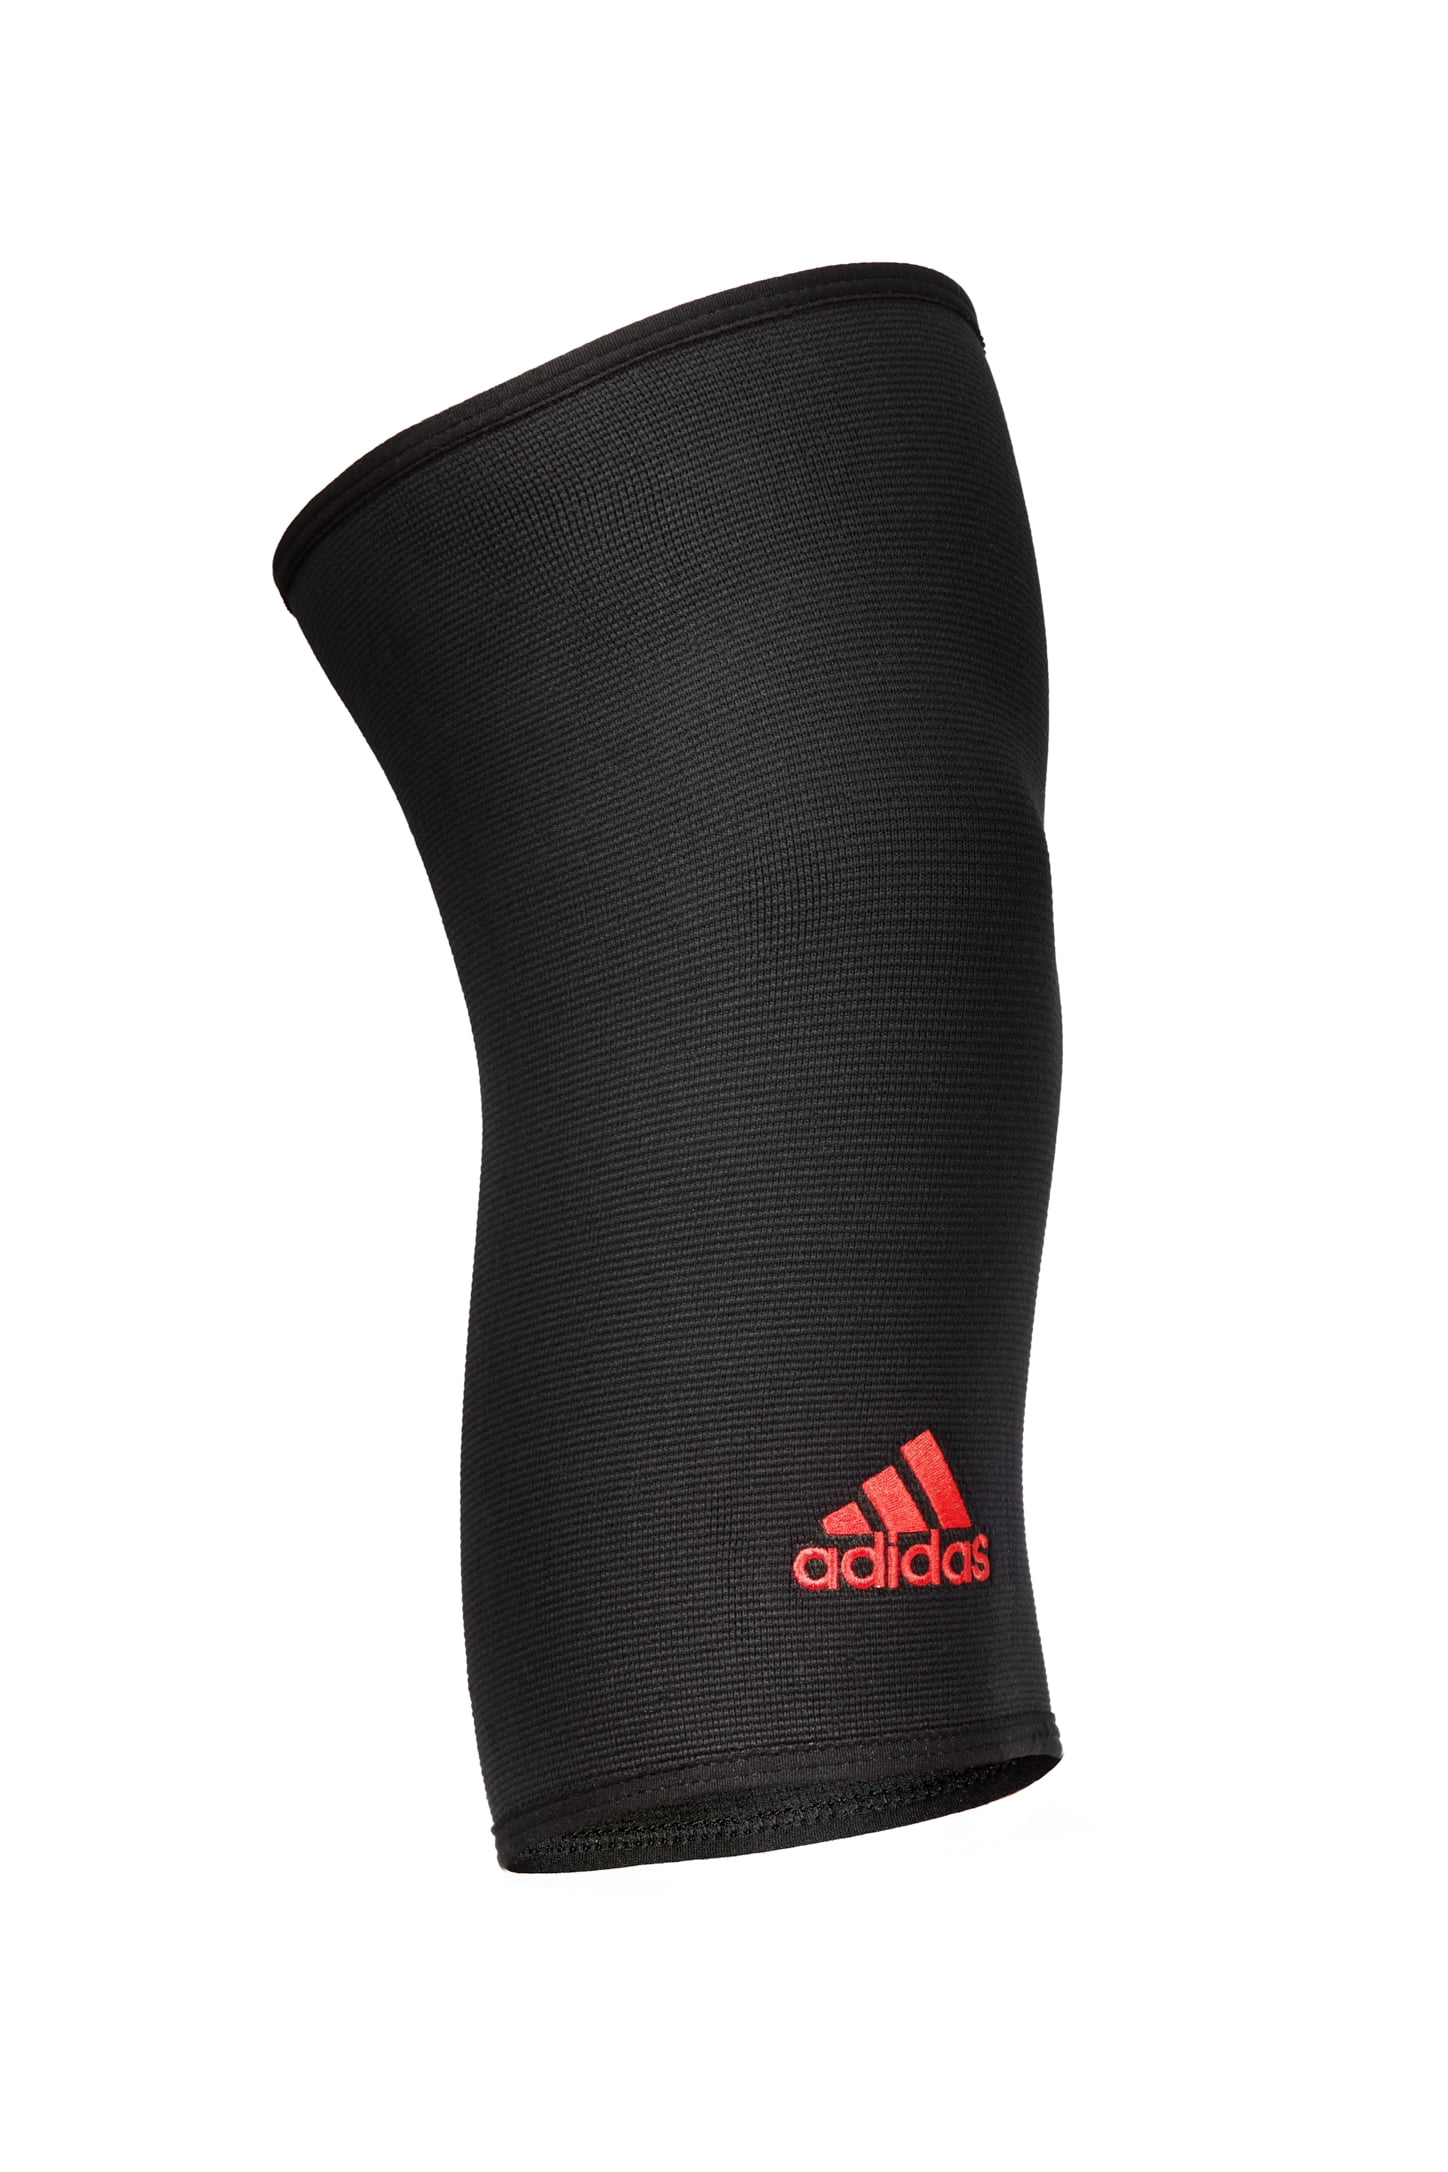 adidas knee sleeve